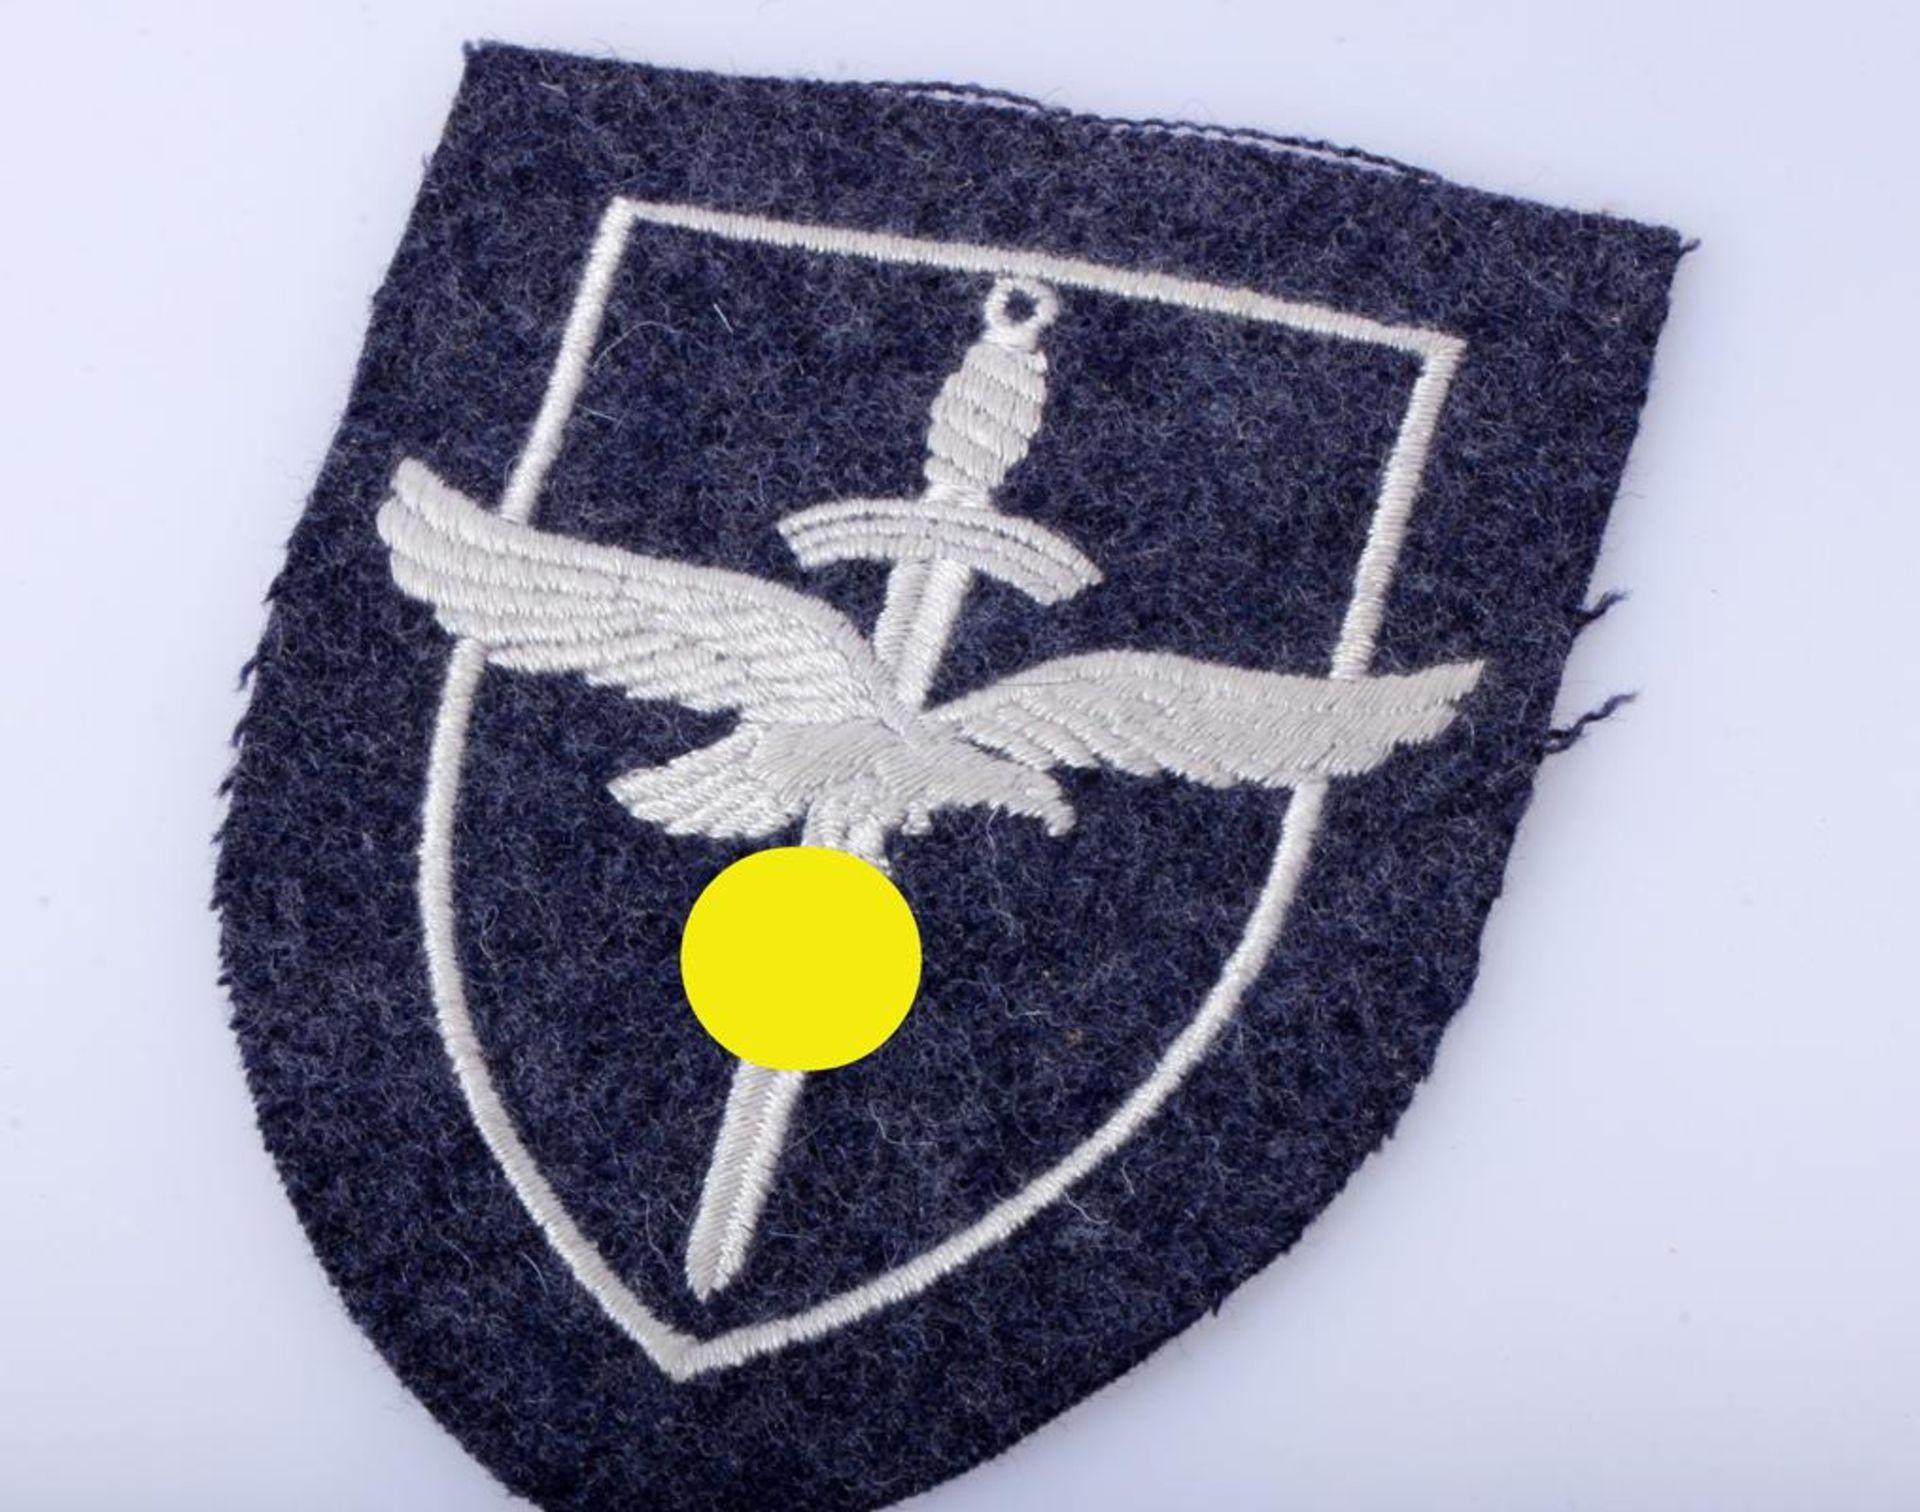 Luftwaffe Ärmelschild für LuftwaffenhelferinnenMaschinengestickte Ausführung.